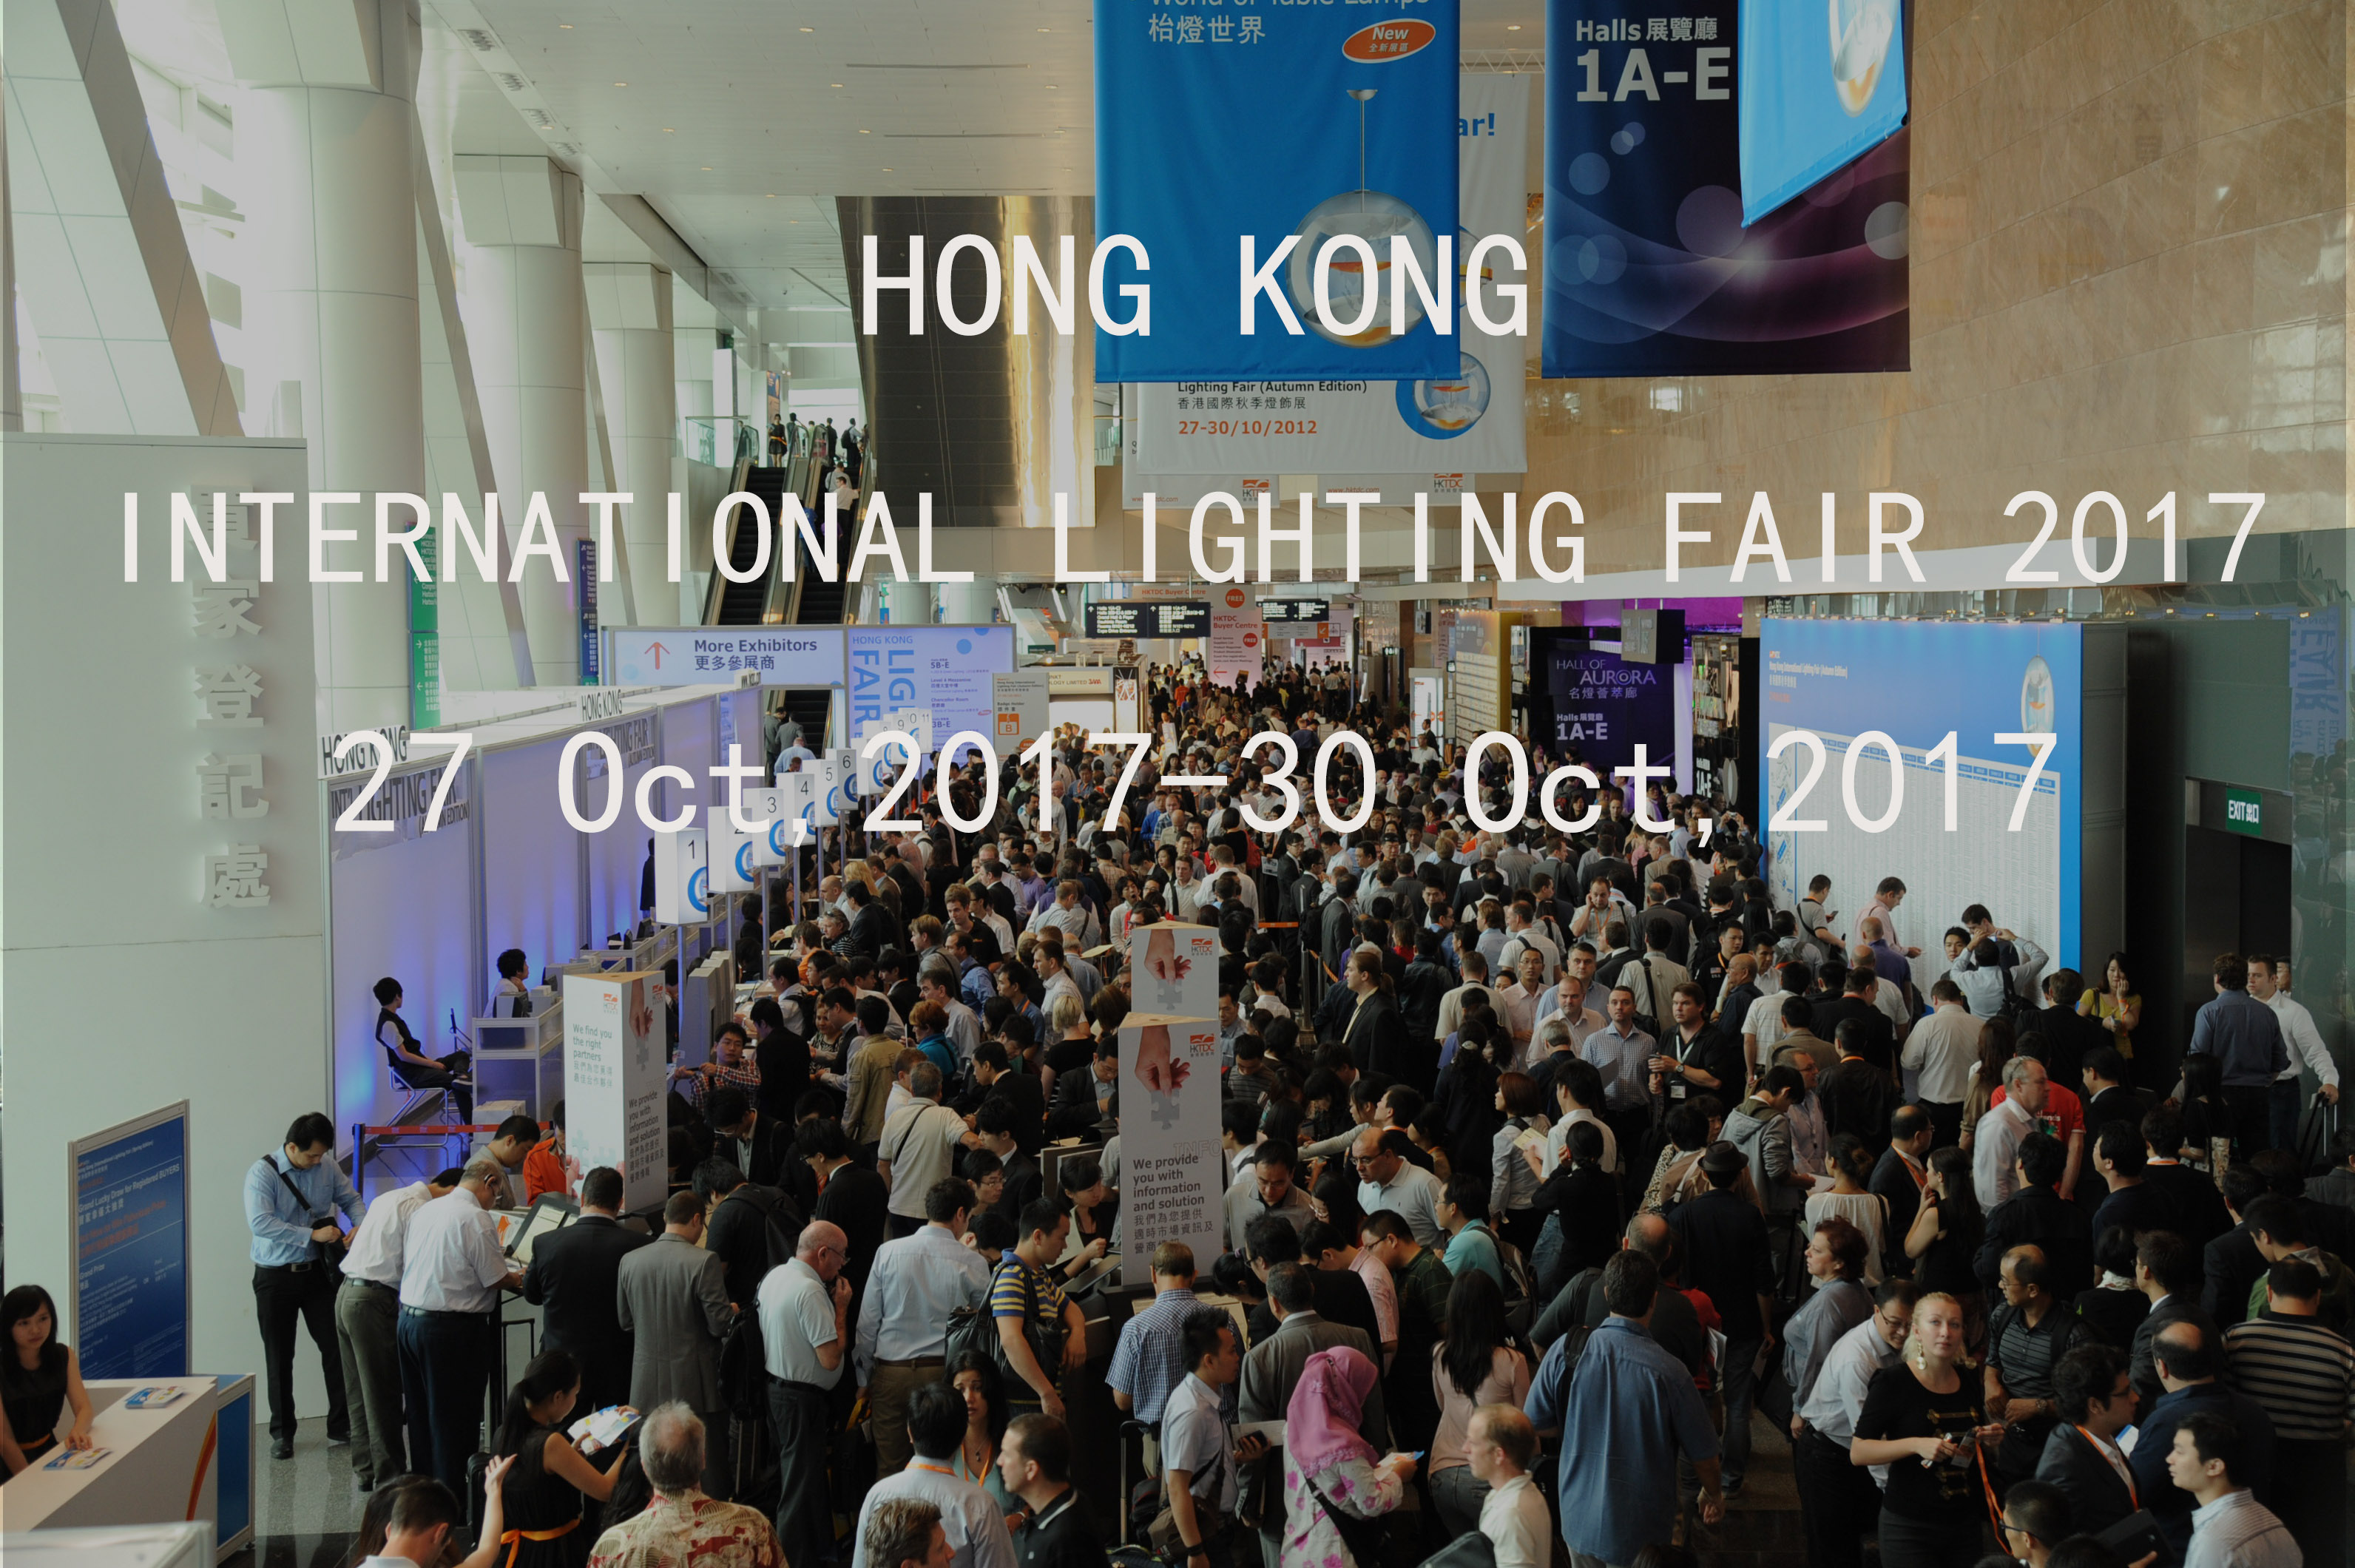 See you again at the 2017 Hong Kong Lighting Fair